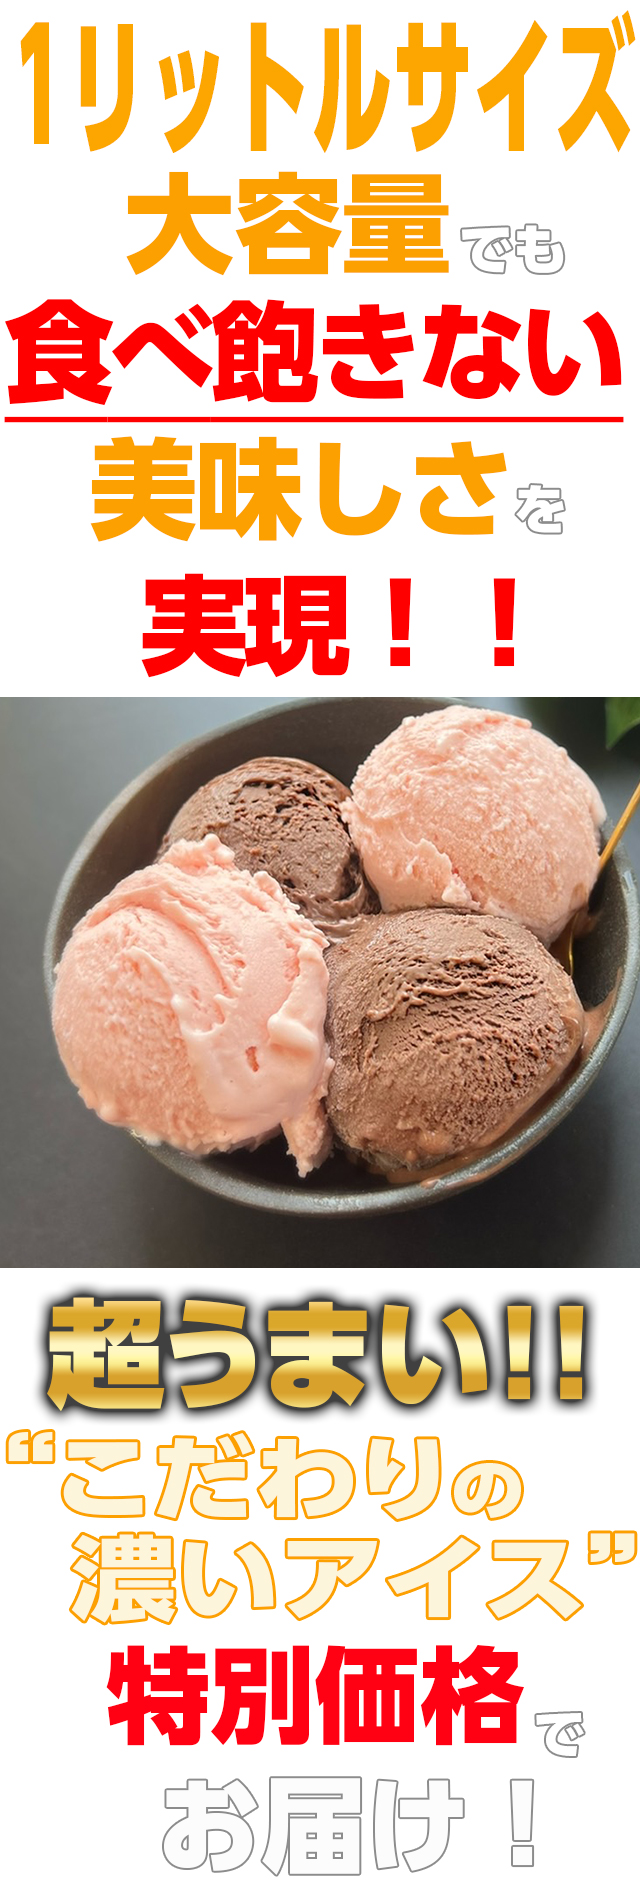 アイス アイスクリーム 濃いアイス 大容量 1リットル×2個セット ショコラ ストロベリー 食べくらべ バルク チョコレート 苺 いちご 業務用 安い 濃厚 おためし